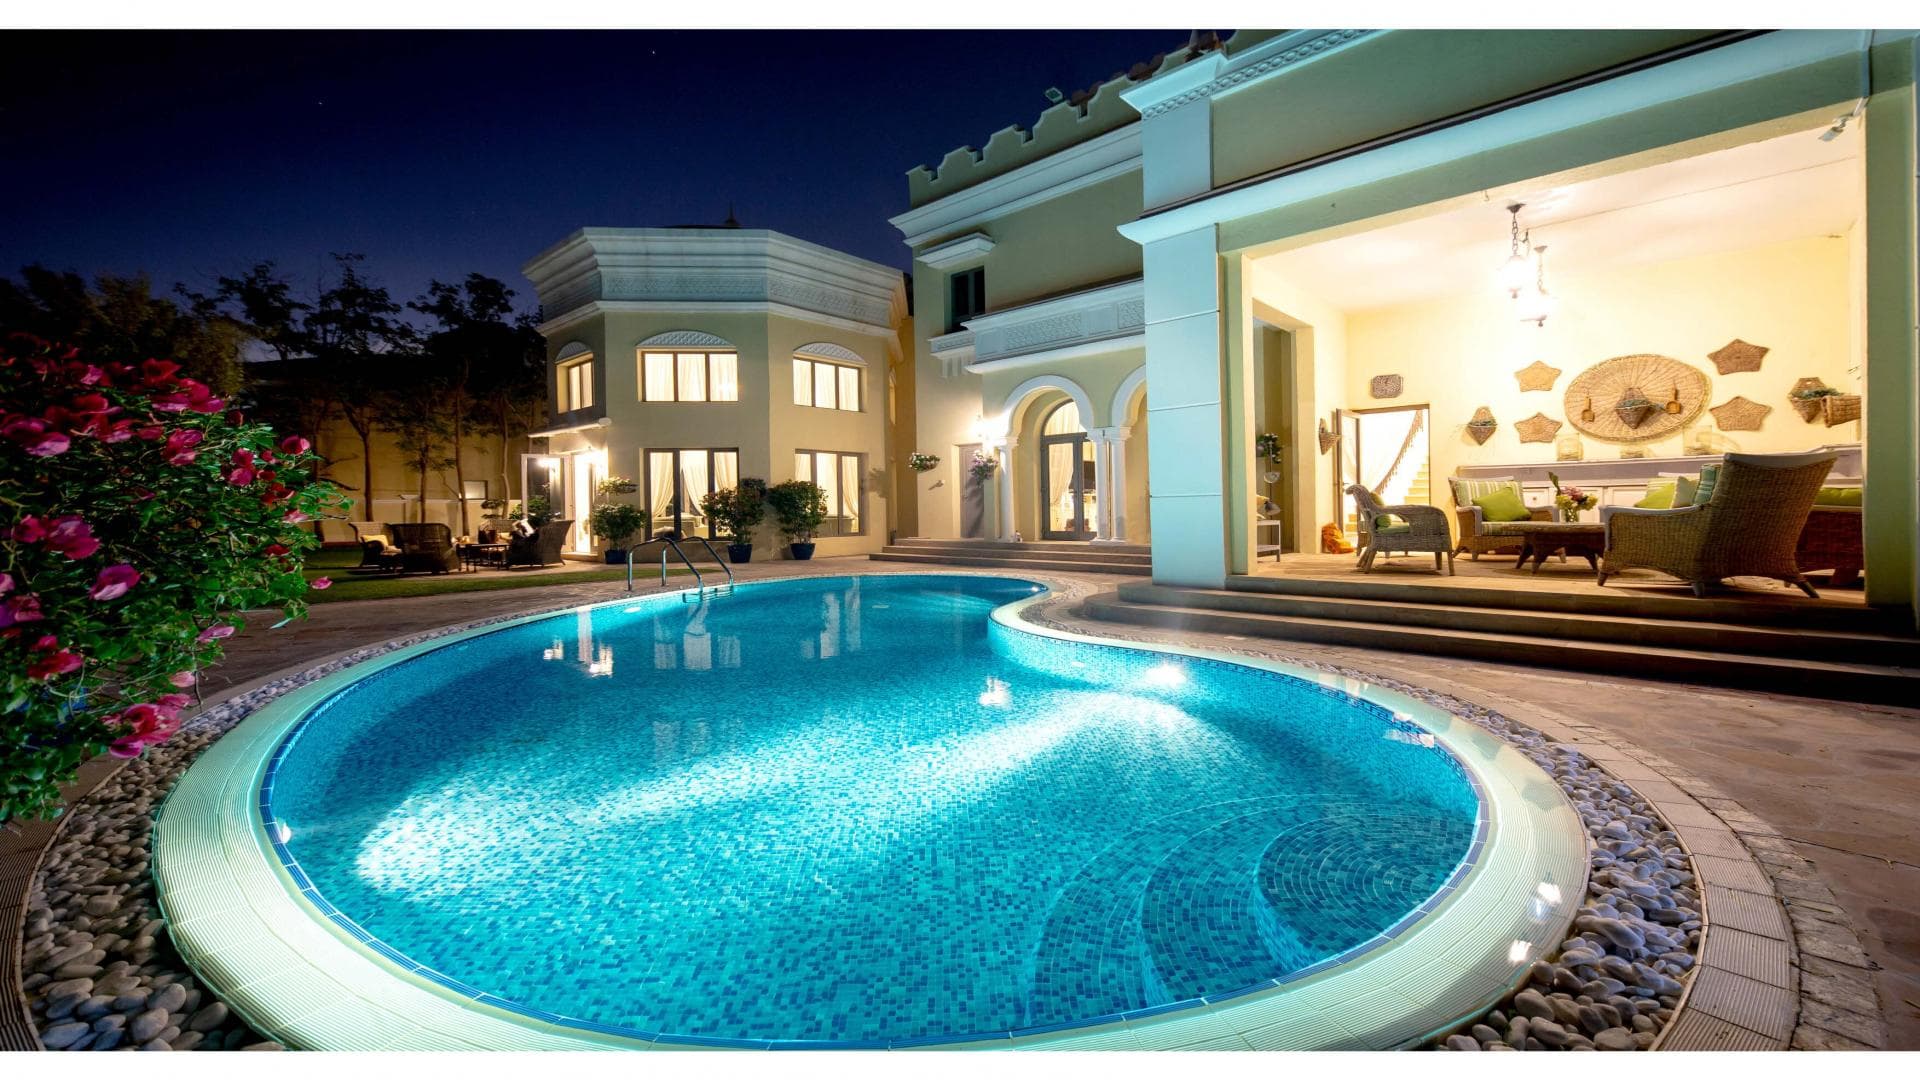 7 Bedroom Villa For Rent Al Reem 2 Lp35747 2074ac9f8a8a7800.jpg